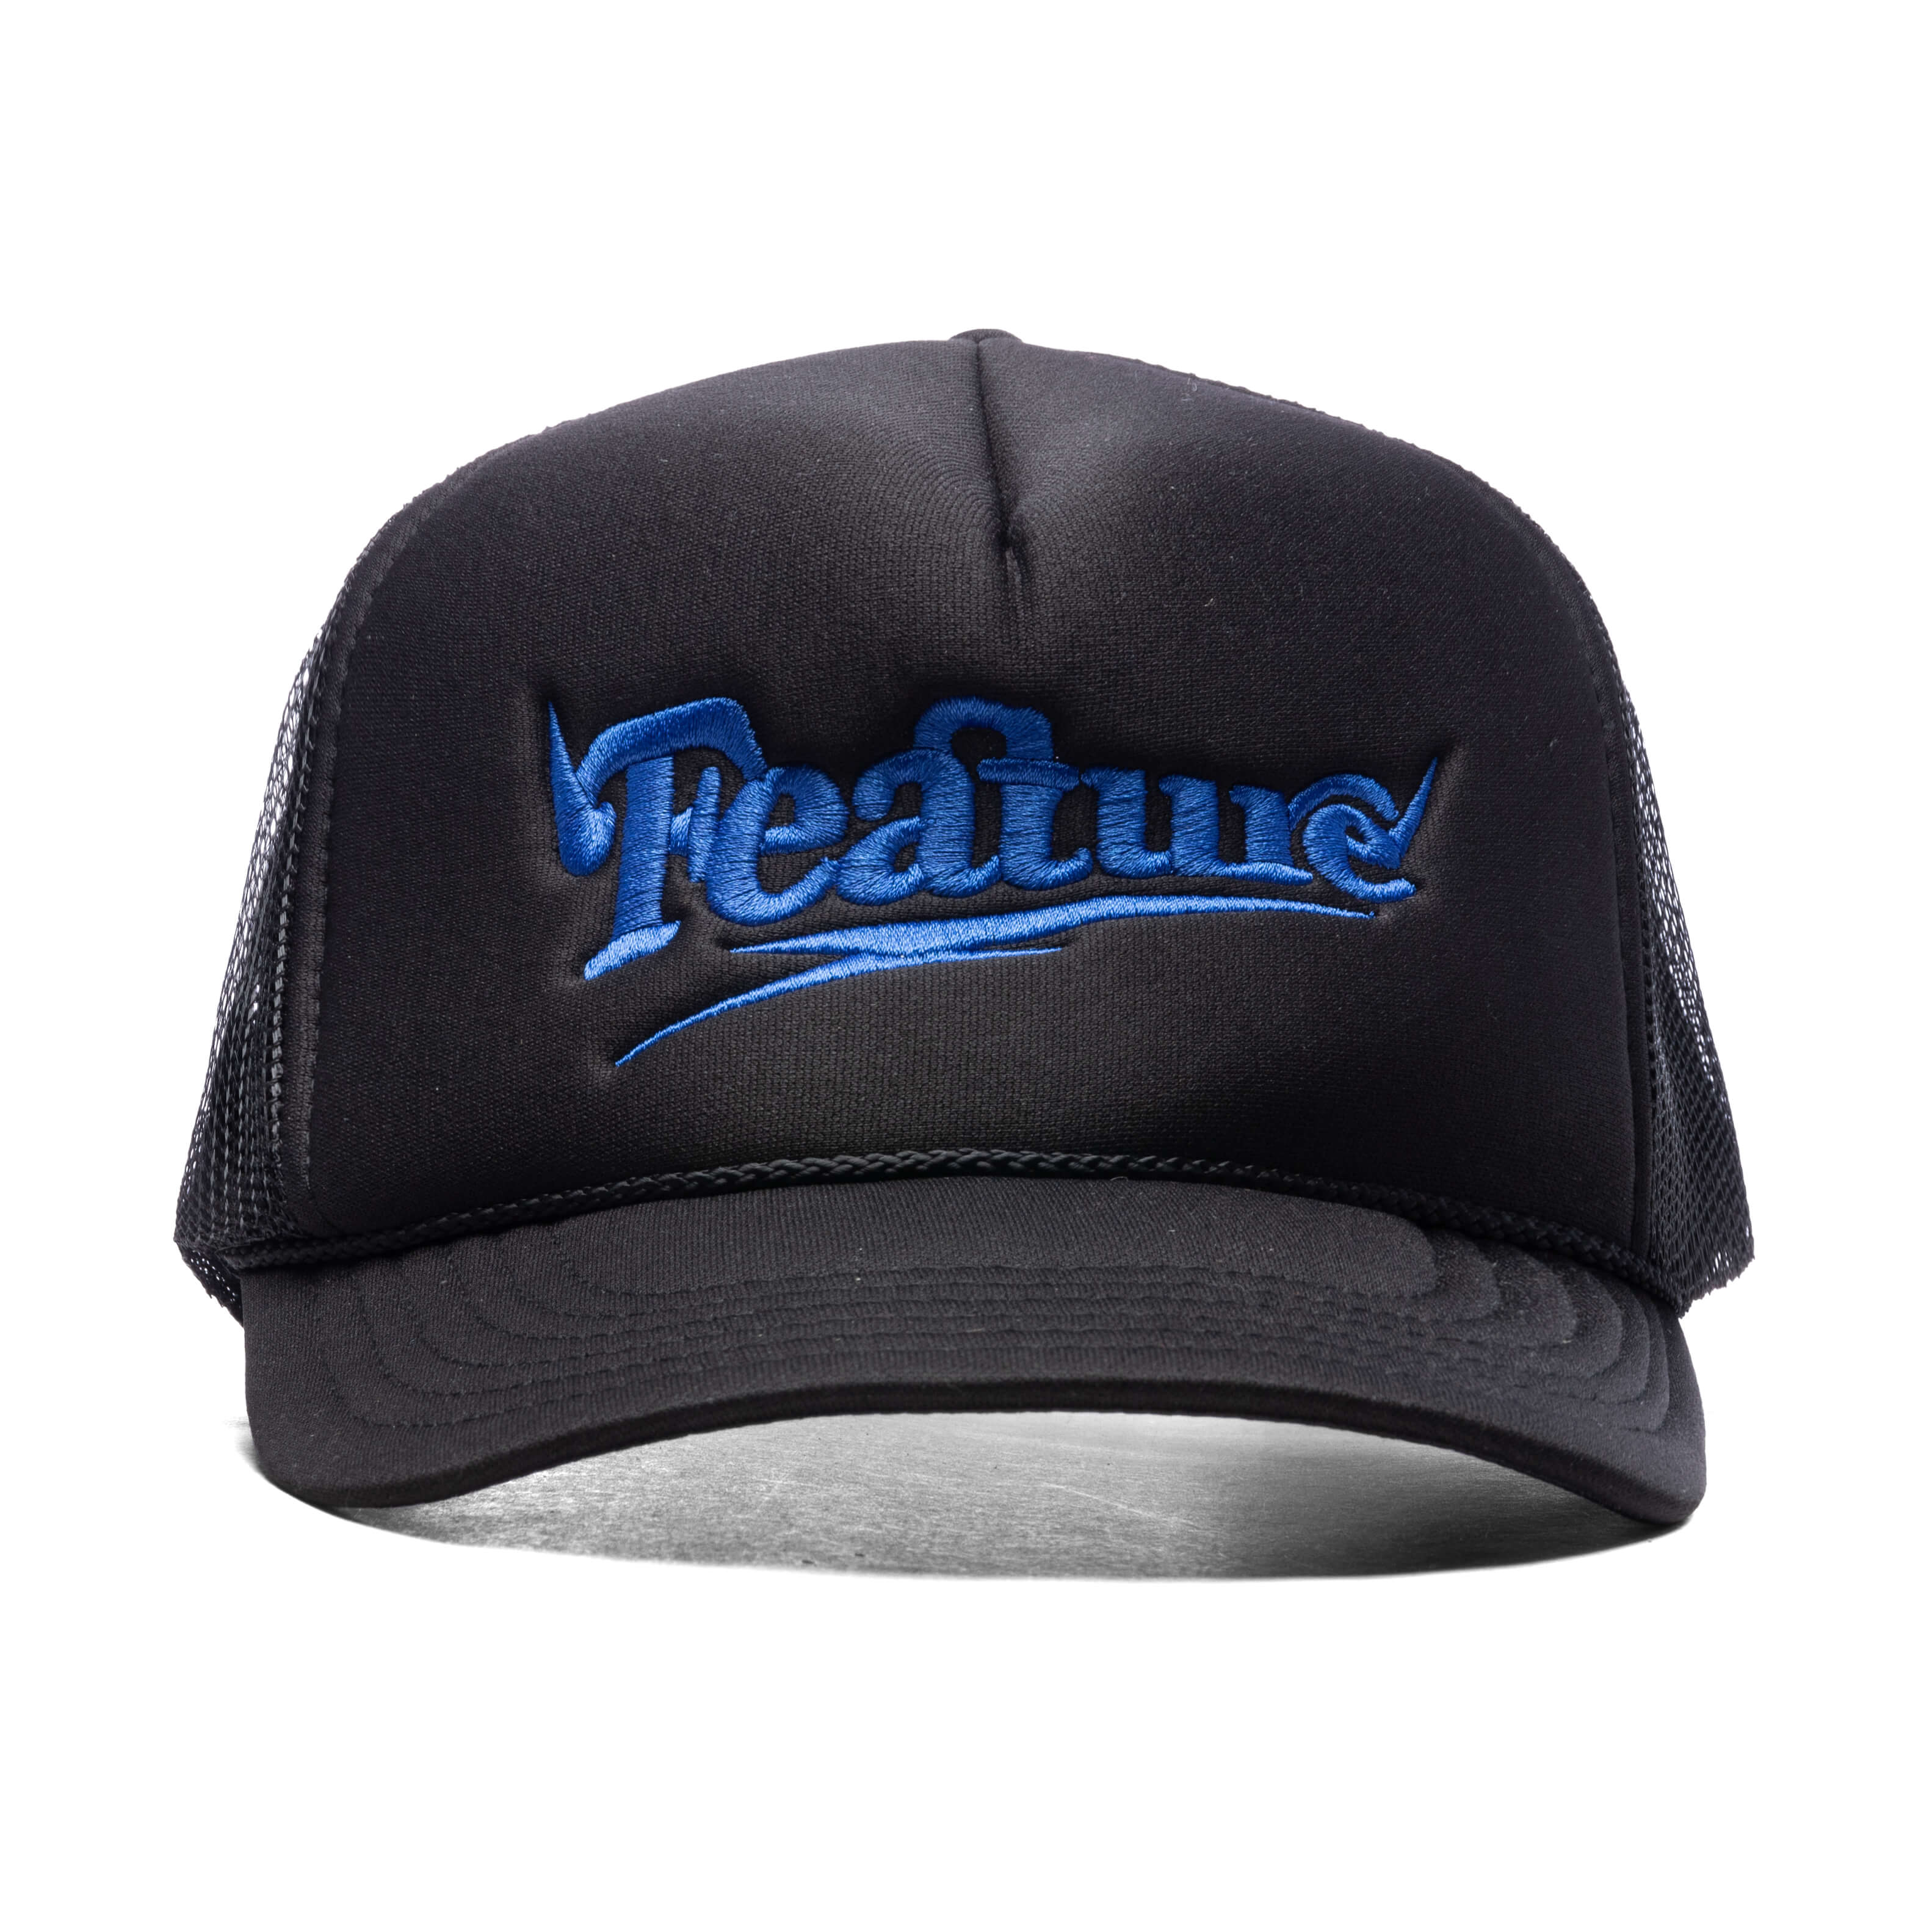 Spike Trucker Hat V2 - Black/Blue